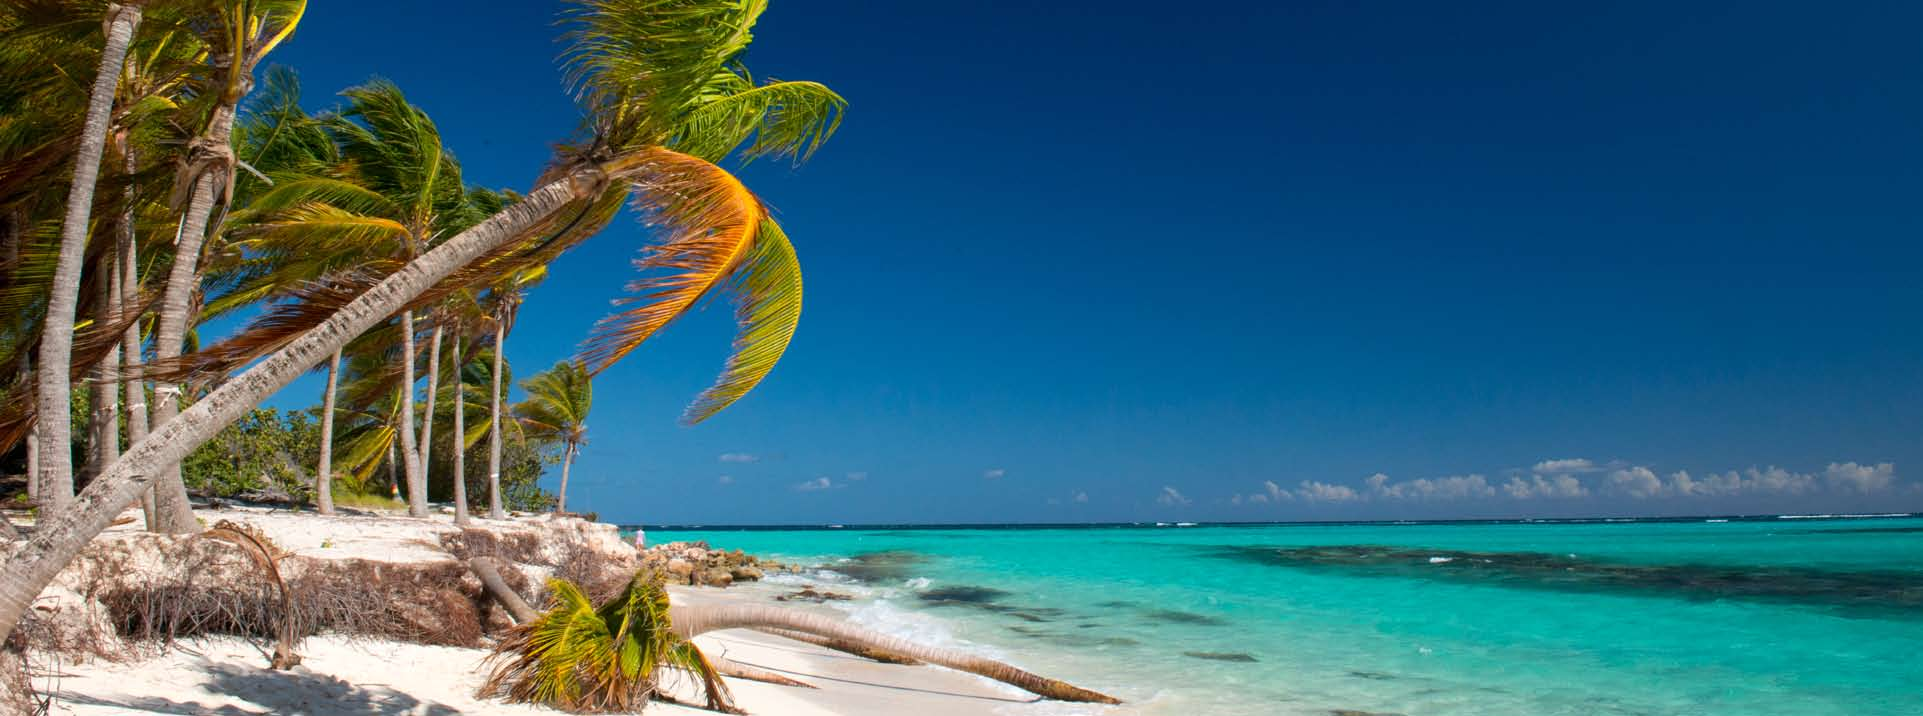 ogólne informacje na temat anguilli Anguilla to brytyjskie terytorium zamorskie leżące na Karaibach; jedna z najbardziej na północ wysuniętych wysp archipelagu Wysp Nawietrznych w Antylach Mniejszych.